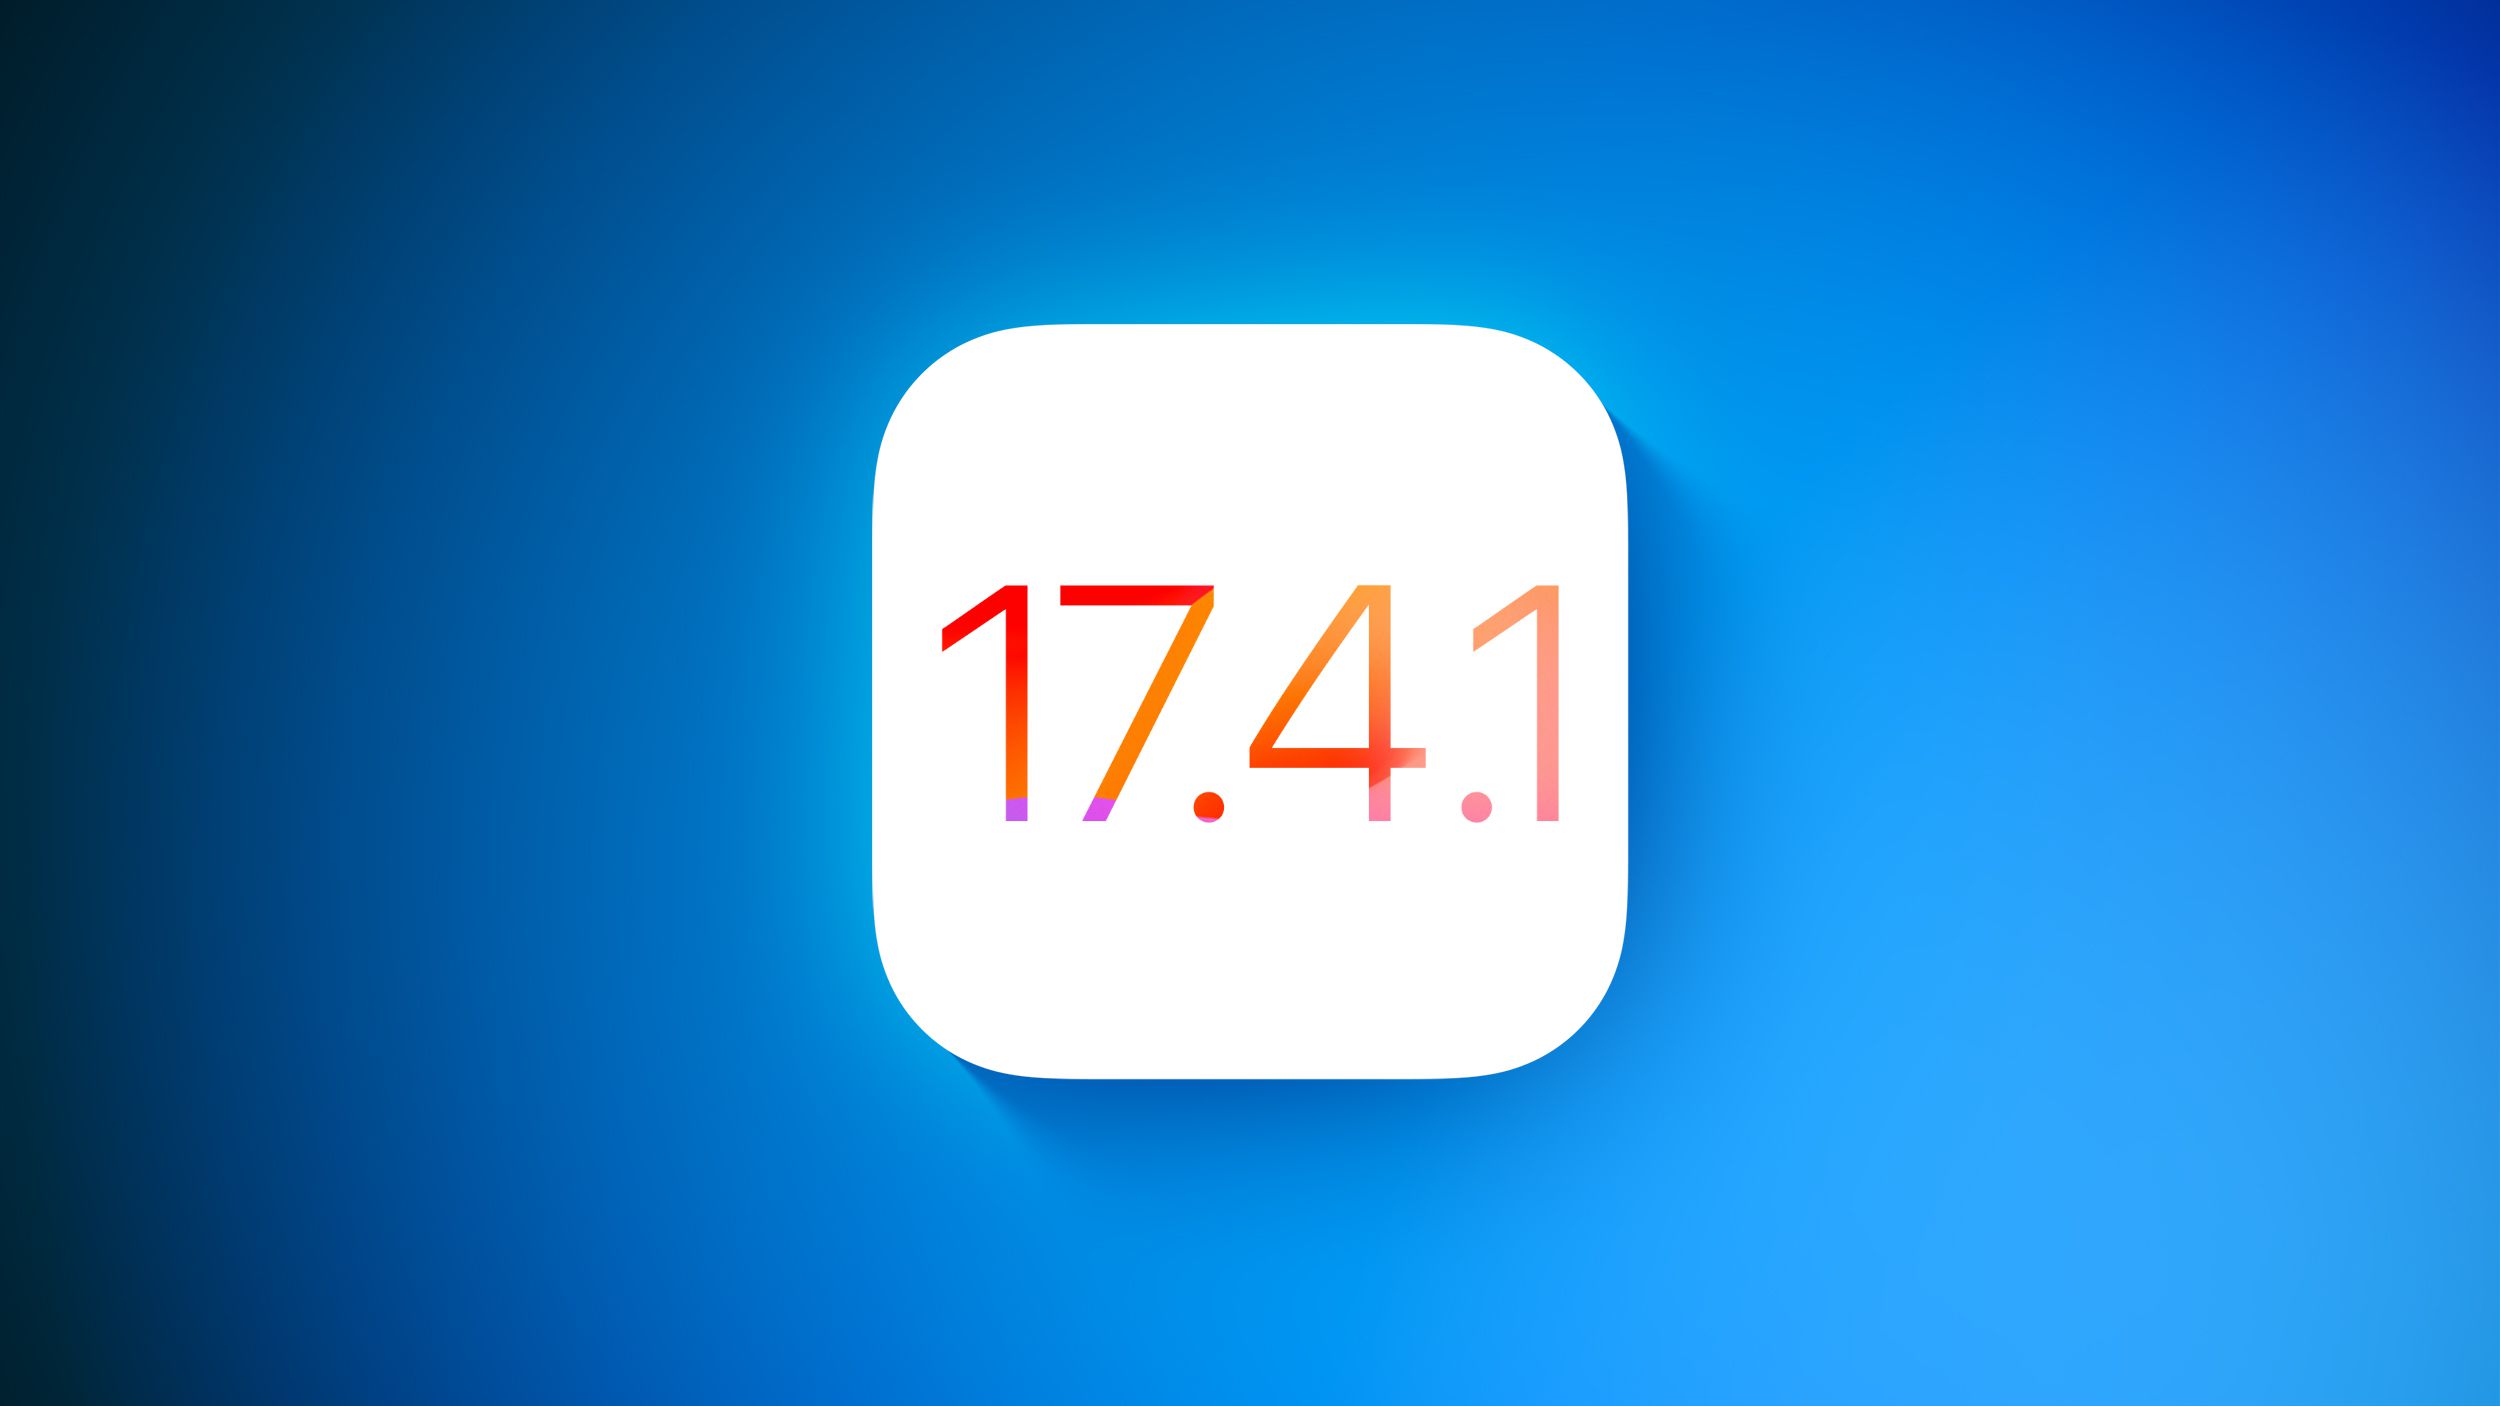 Apple lanza iOS 17.4.1 y iPadOS 17.4.1 con correcciones de errores y mejoras de seguridad